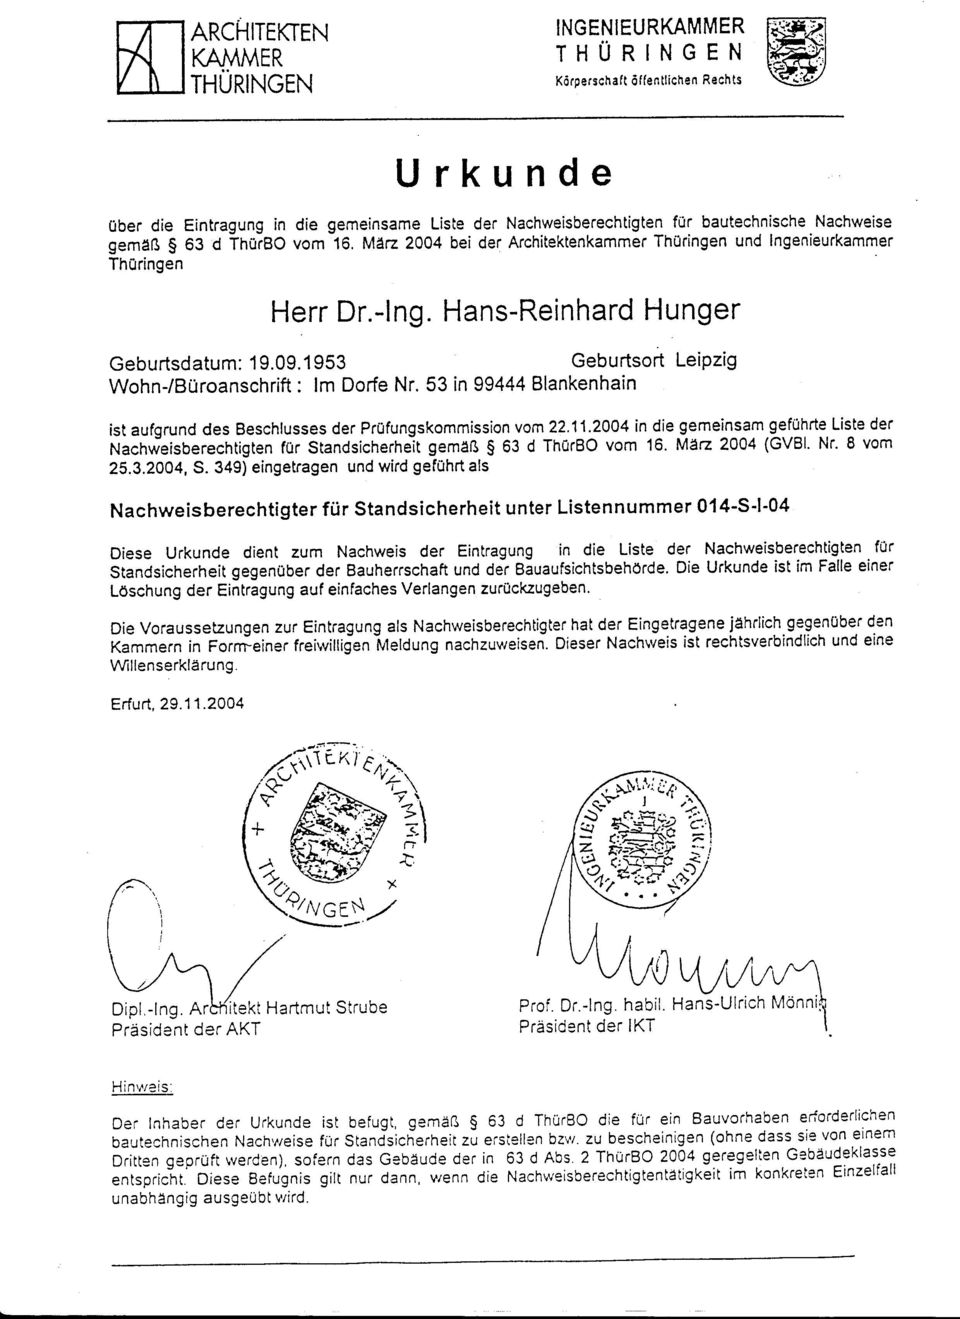 1 953 Geburtsort Leipzig Wohn-/Büroanschrift: lm Dorfe Nr. 53 in 99444 Blankenhain ist aufgrundes Beschlusses der Prüfungskommission vom22.11.